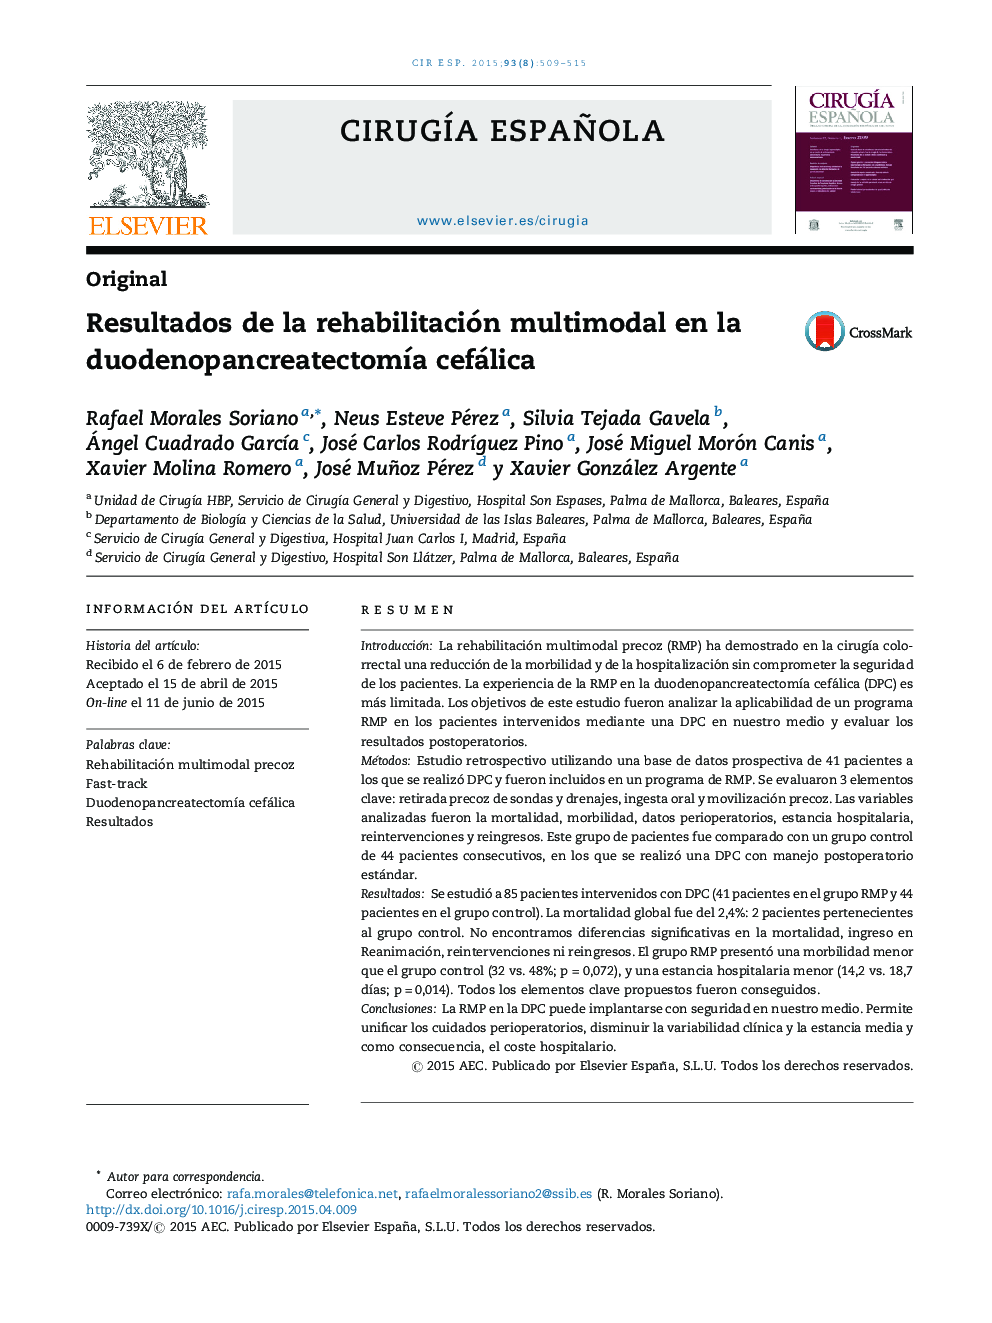 Resultados de la rehabilitación multimodal en la duodenopancreatectomÃ­a cefálica